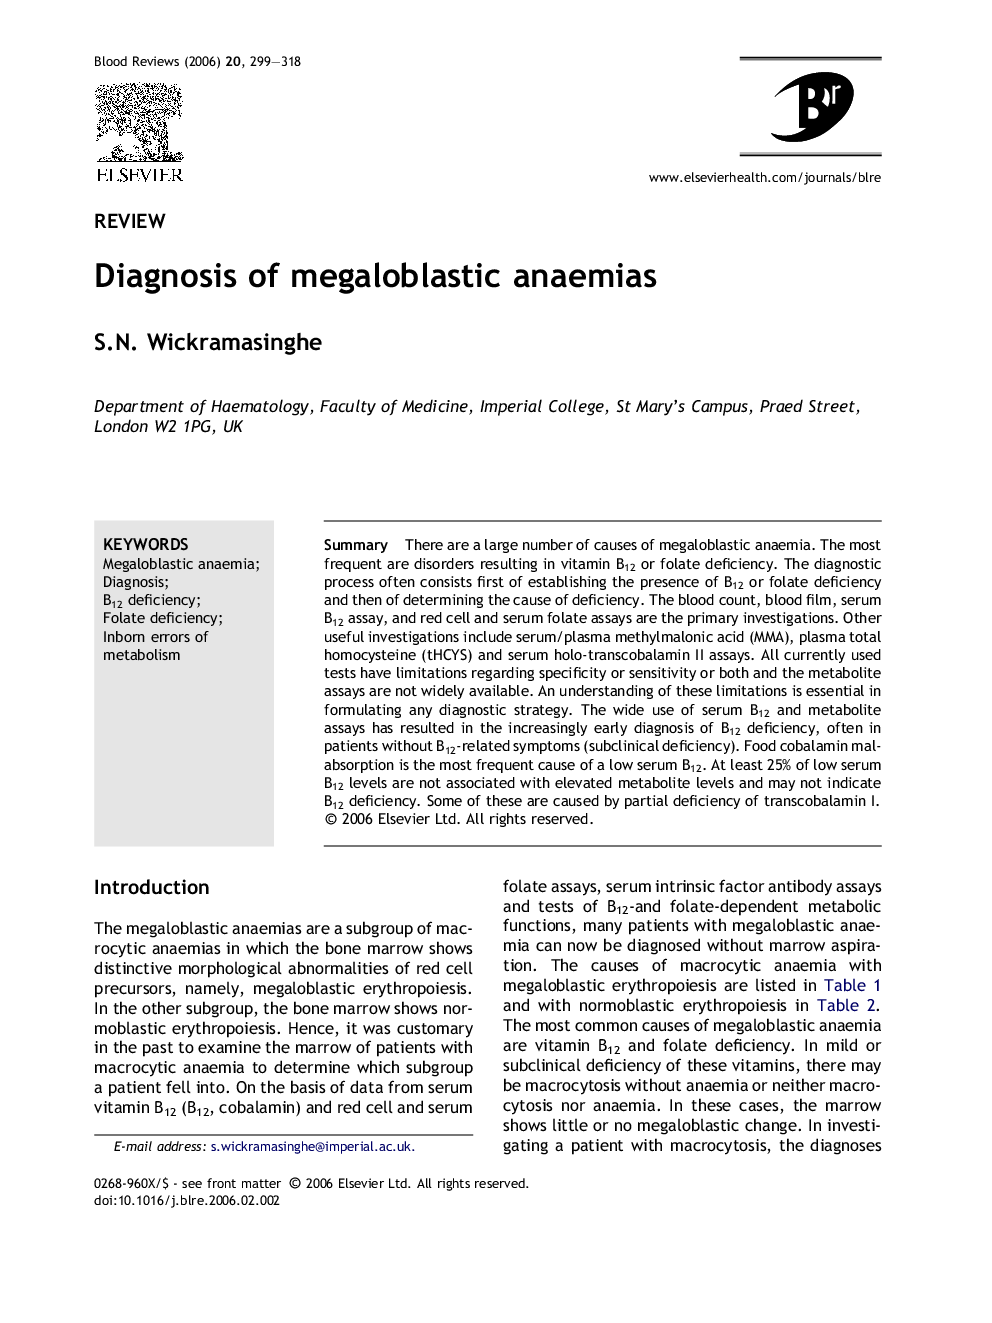 Diagnosis of megaloblastic anaemias